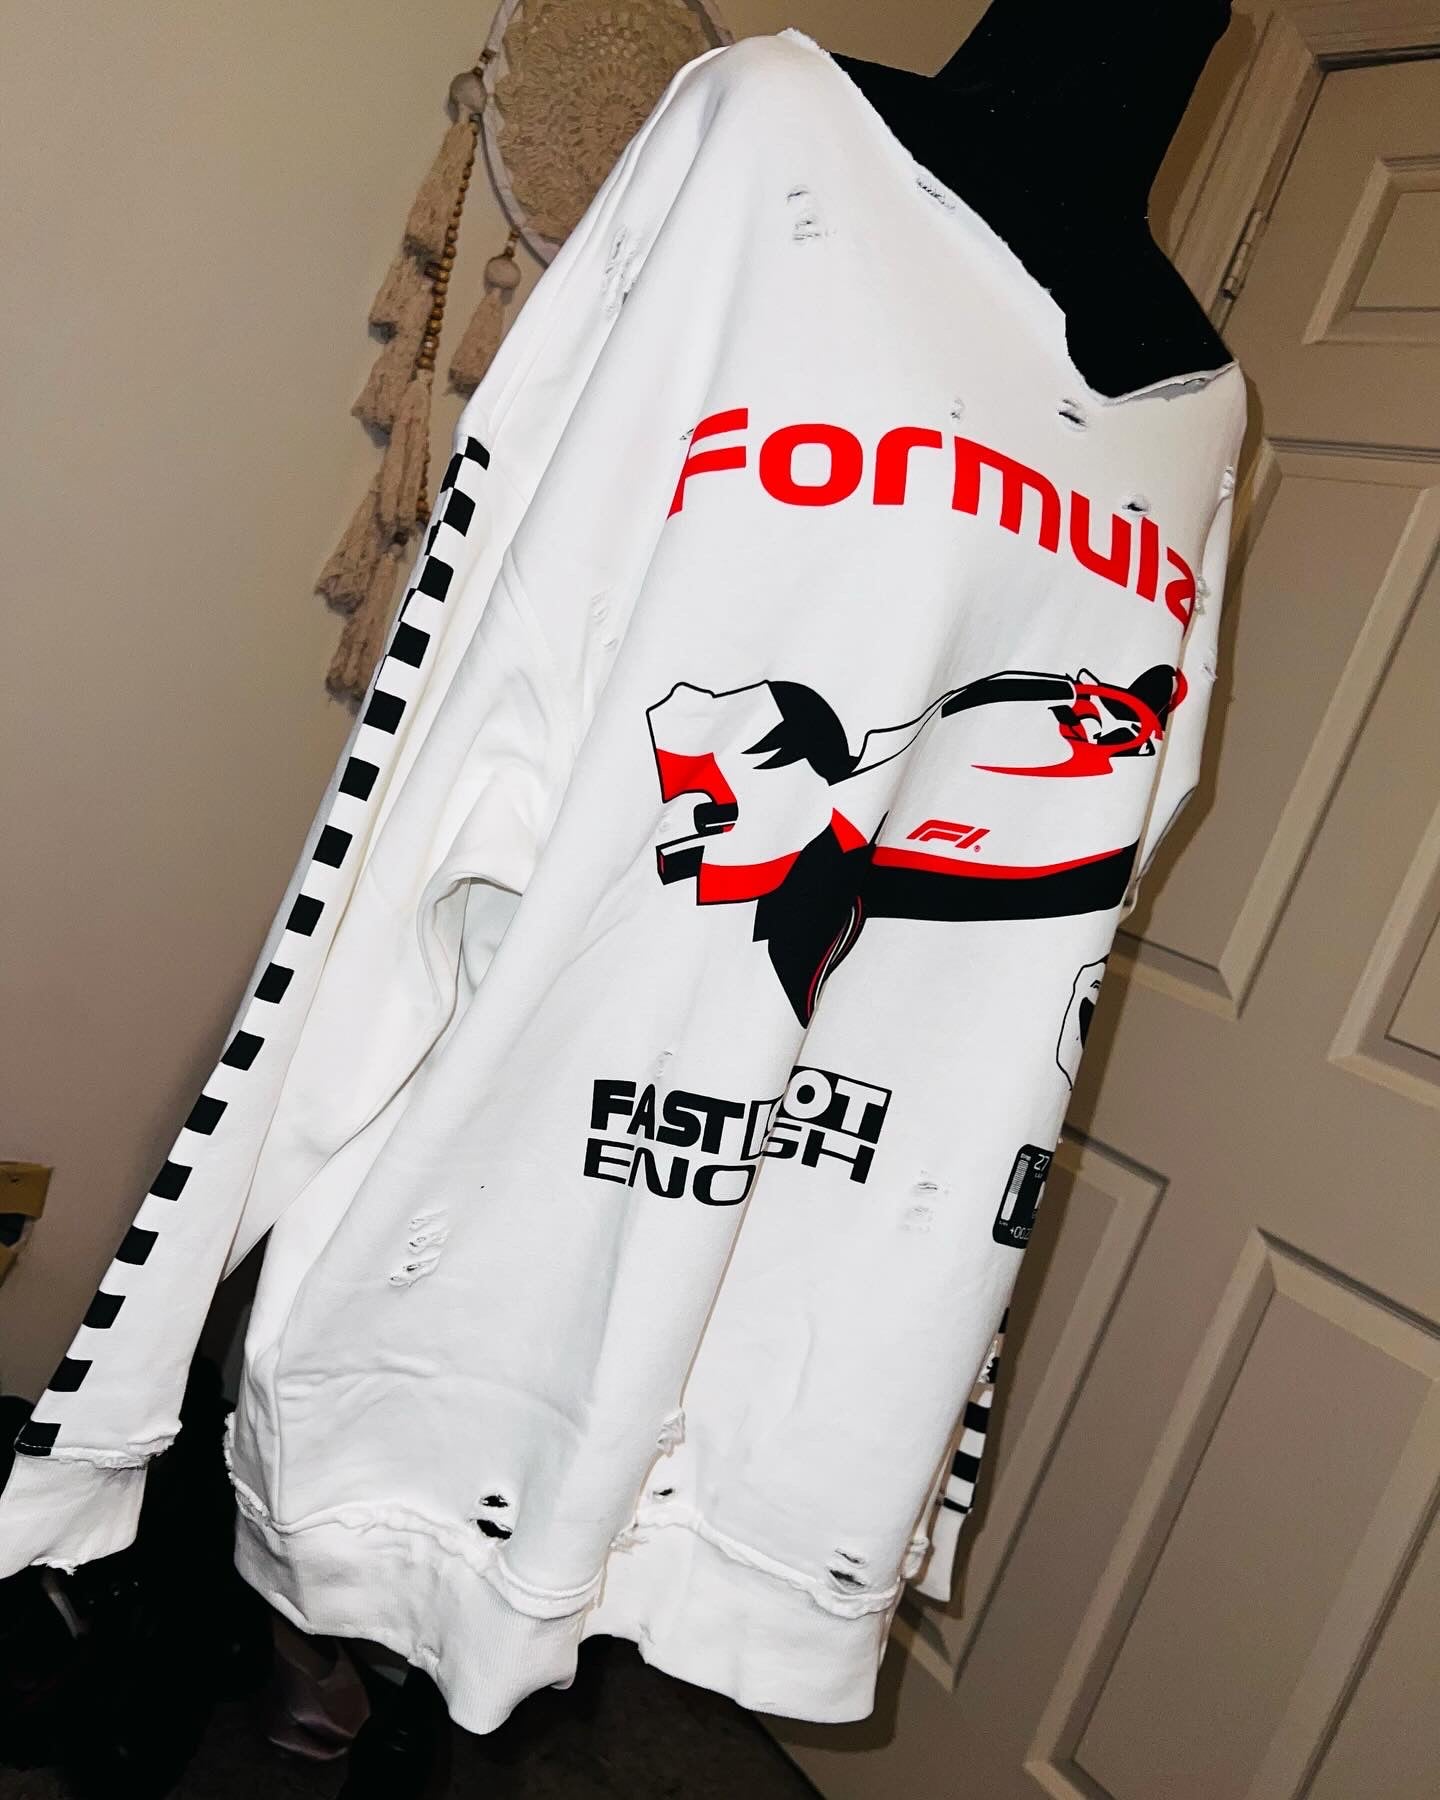 Formula 1 Oversized Sweatshirt